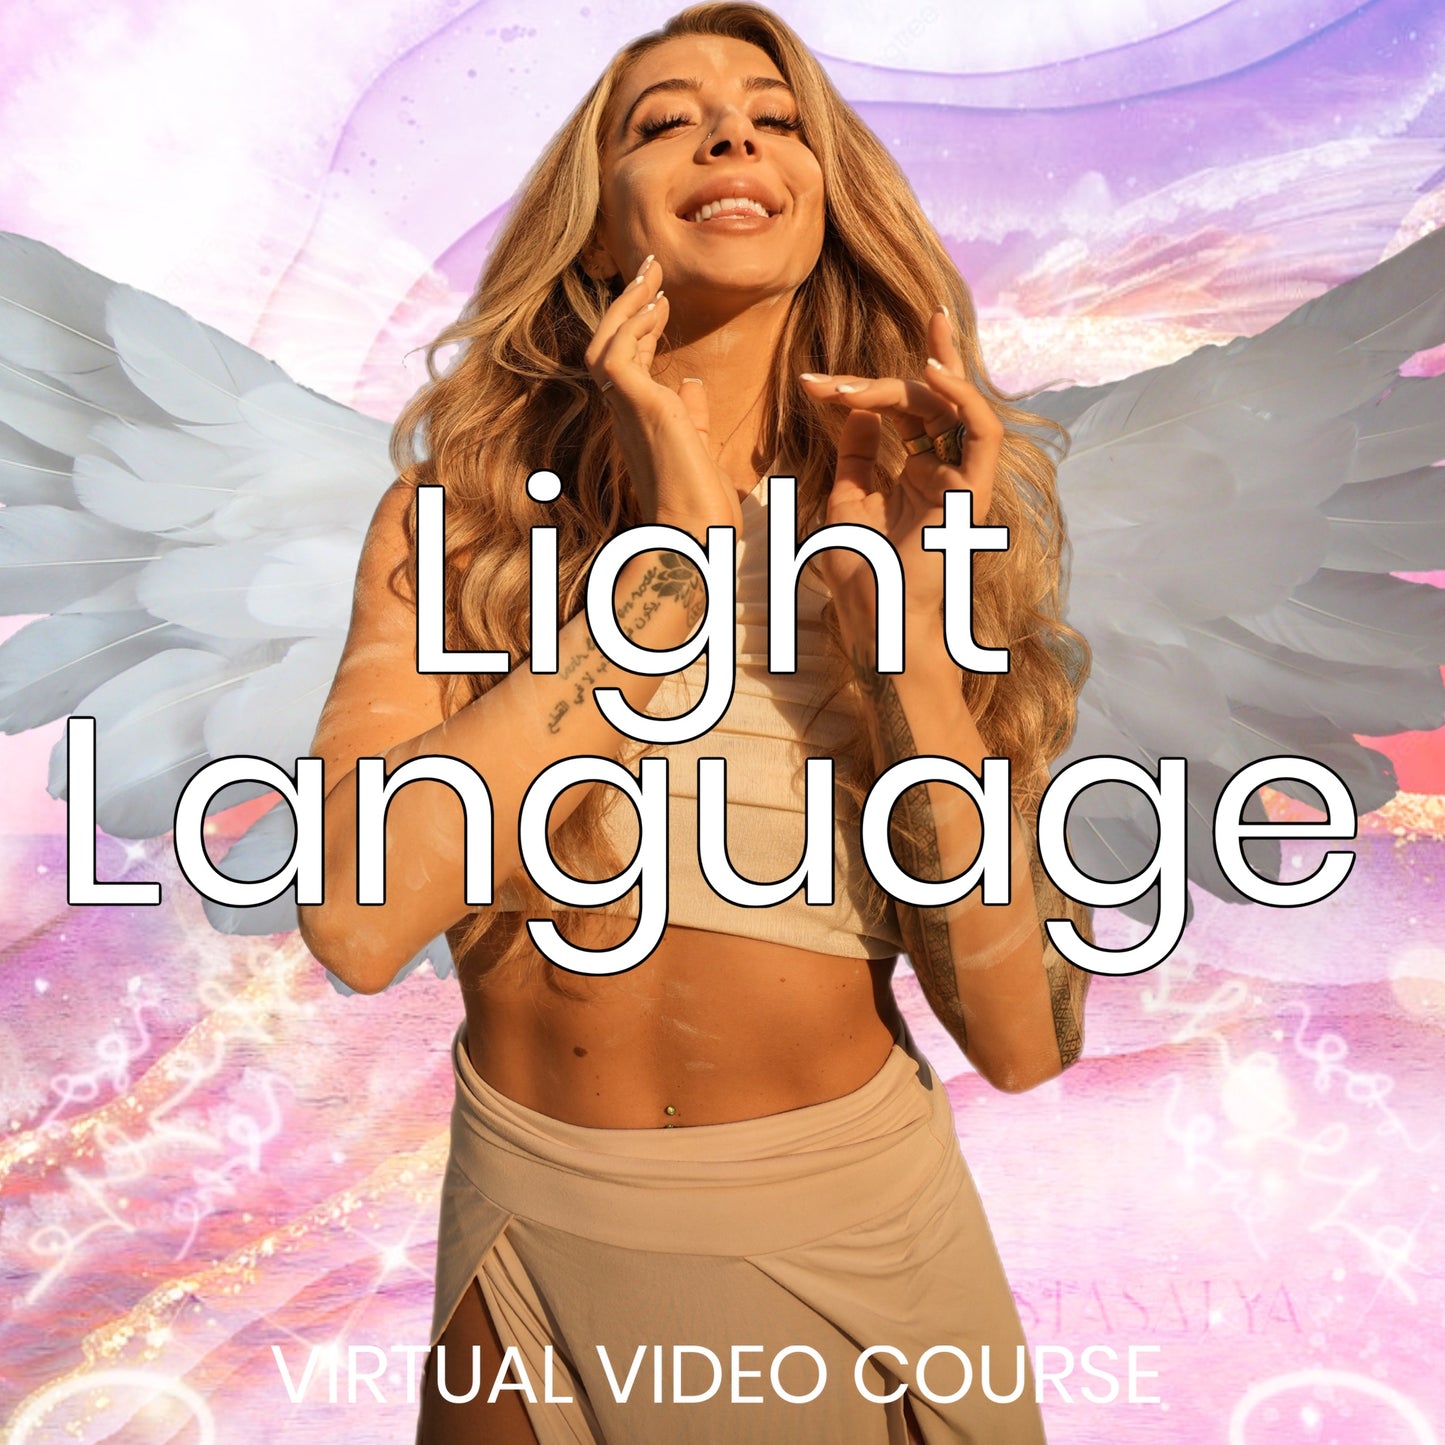 Light Language: Activation Course